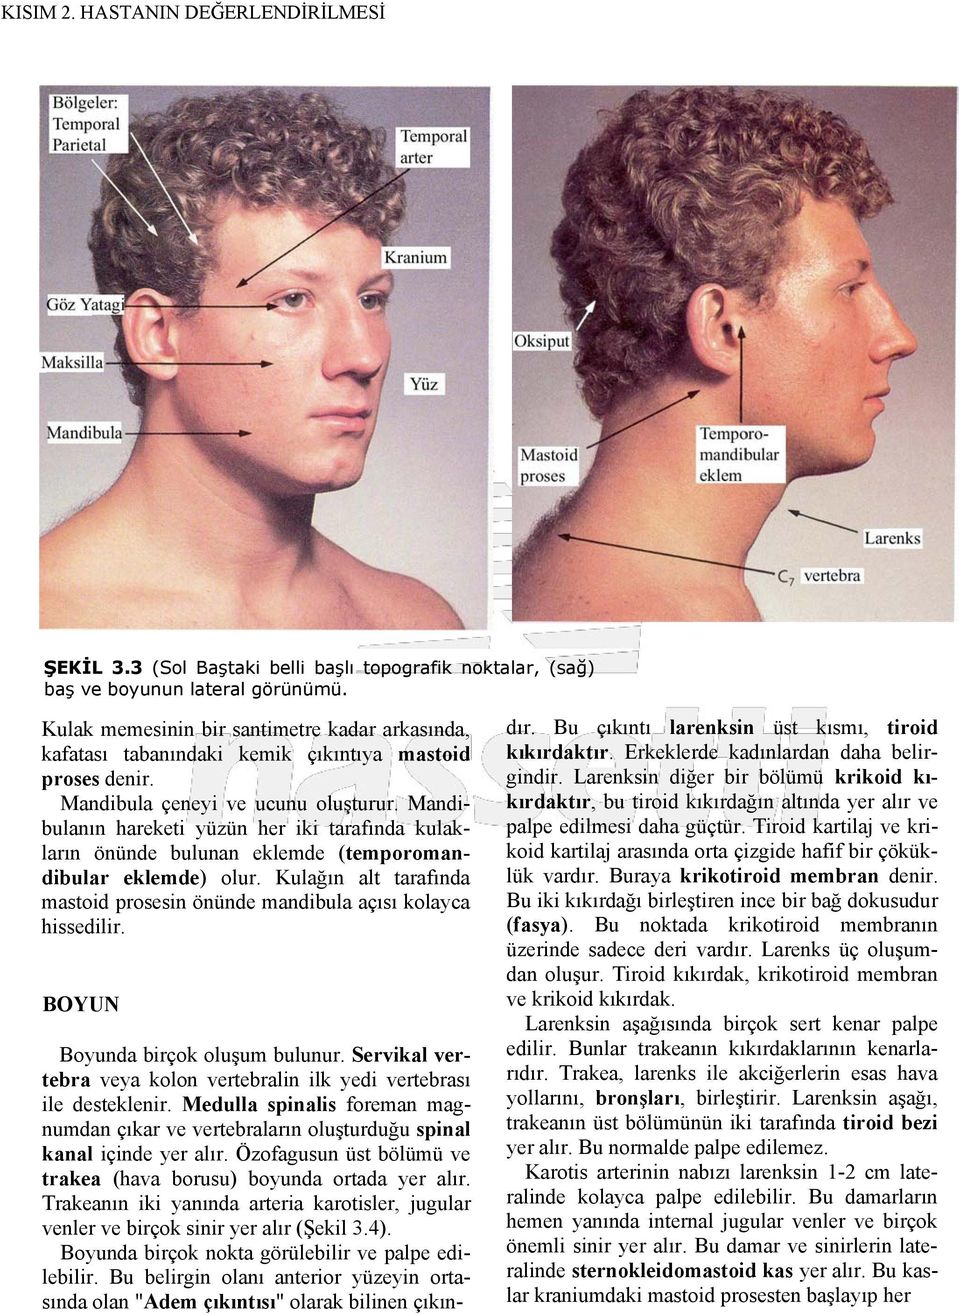 Mandibulanın hareketi yüzün her iki tarafında kulakların önünde bulunan eklemde (temporomandibular eklemde) olur. Kulağın alt tarafında mastoid prosesin önünde mandibula açısı kolayca hissedilir.